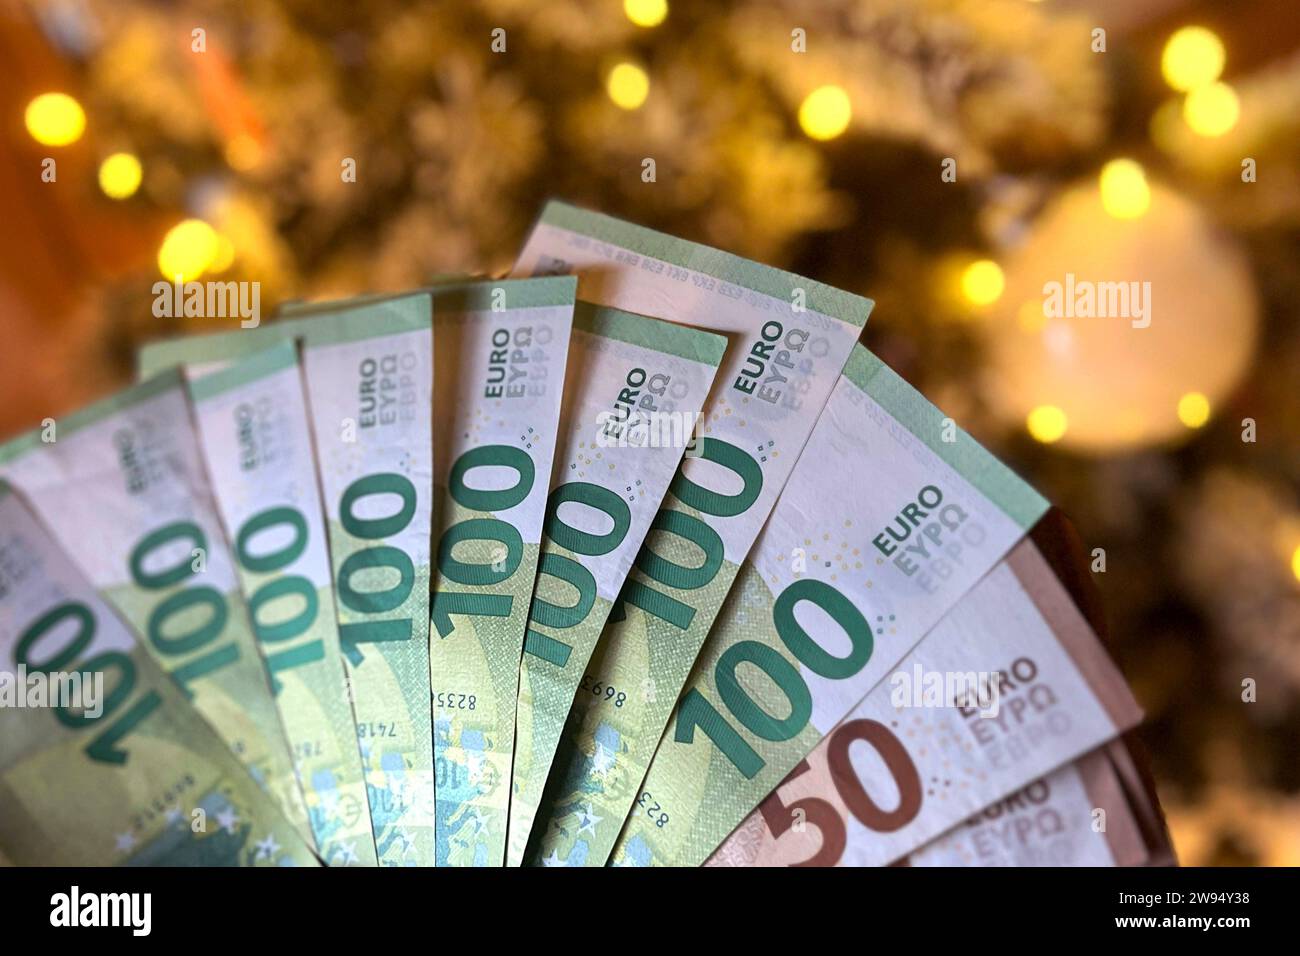 Themenfoto:Geldgeschenk zu Weihnachten. Euroscheine vor Weihnachtsbaum,Geld schneken, *** Themed photo Christmas gift of money Euro bills in front of Christmas tree, money gift, Stock Photo